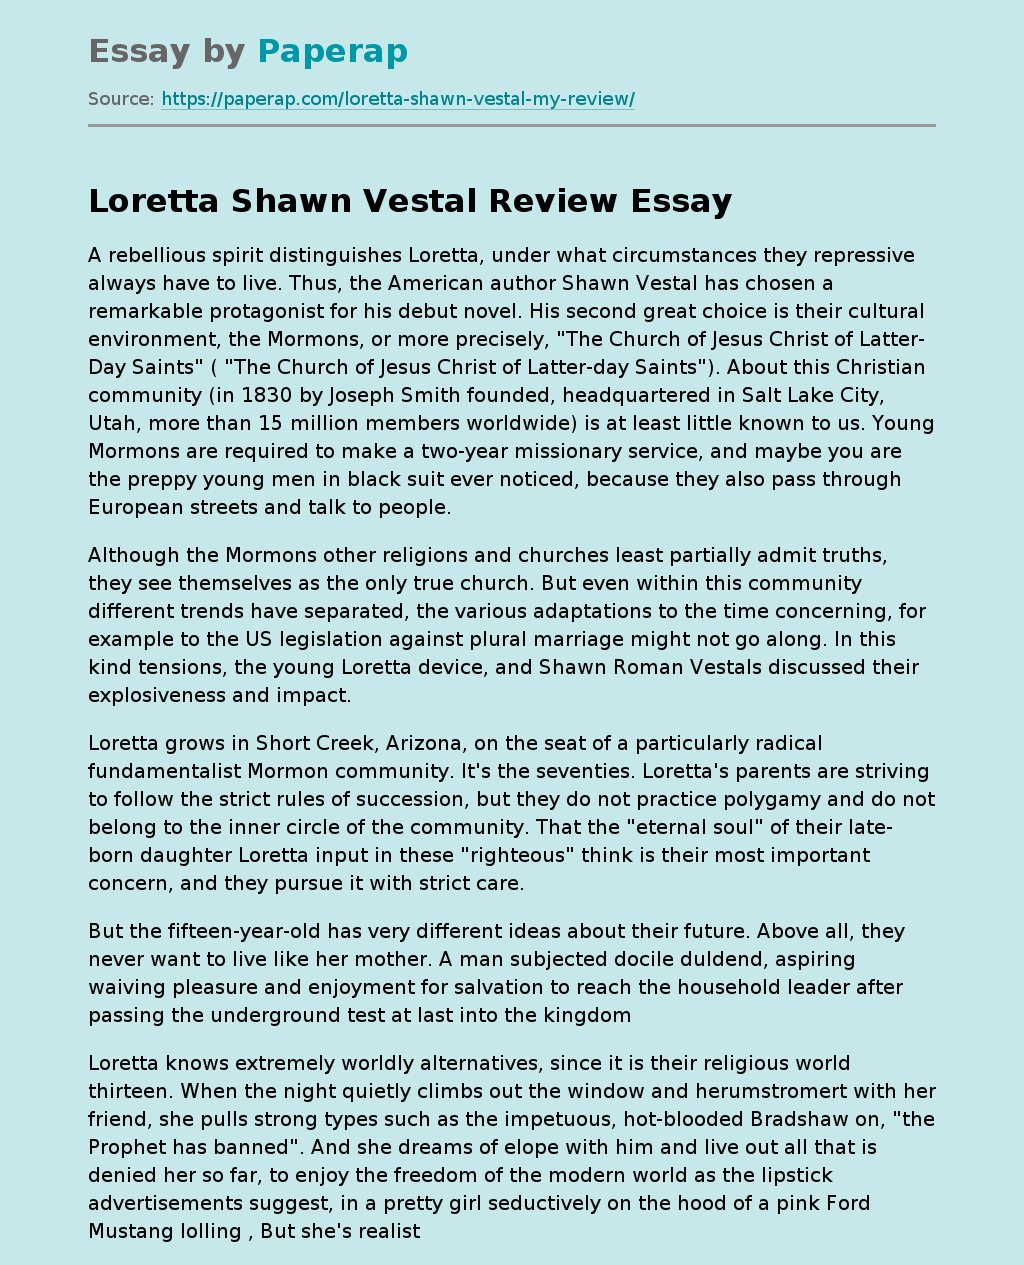 Loretta Shawn Vestal Review